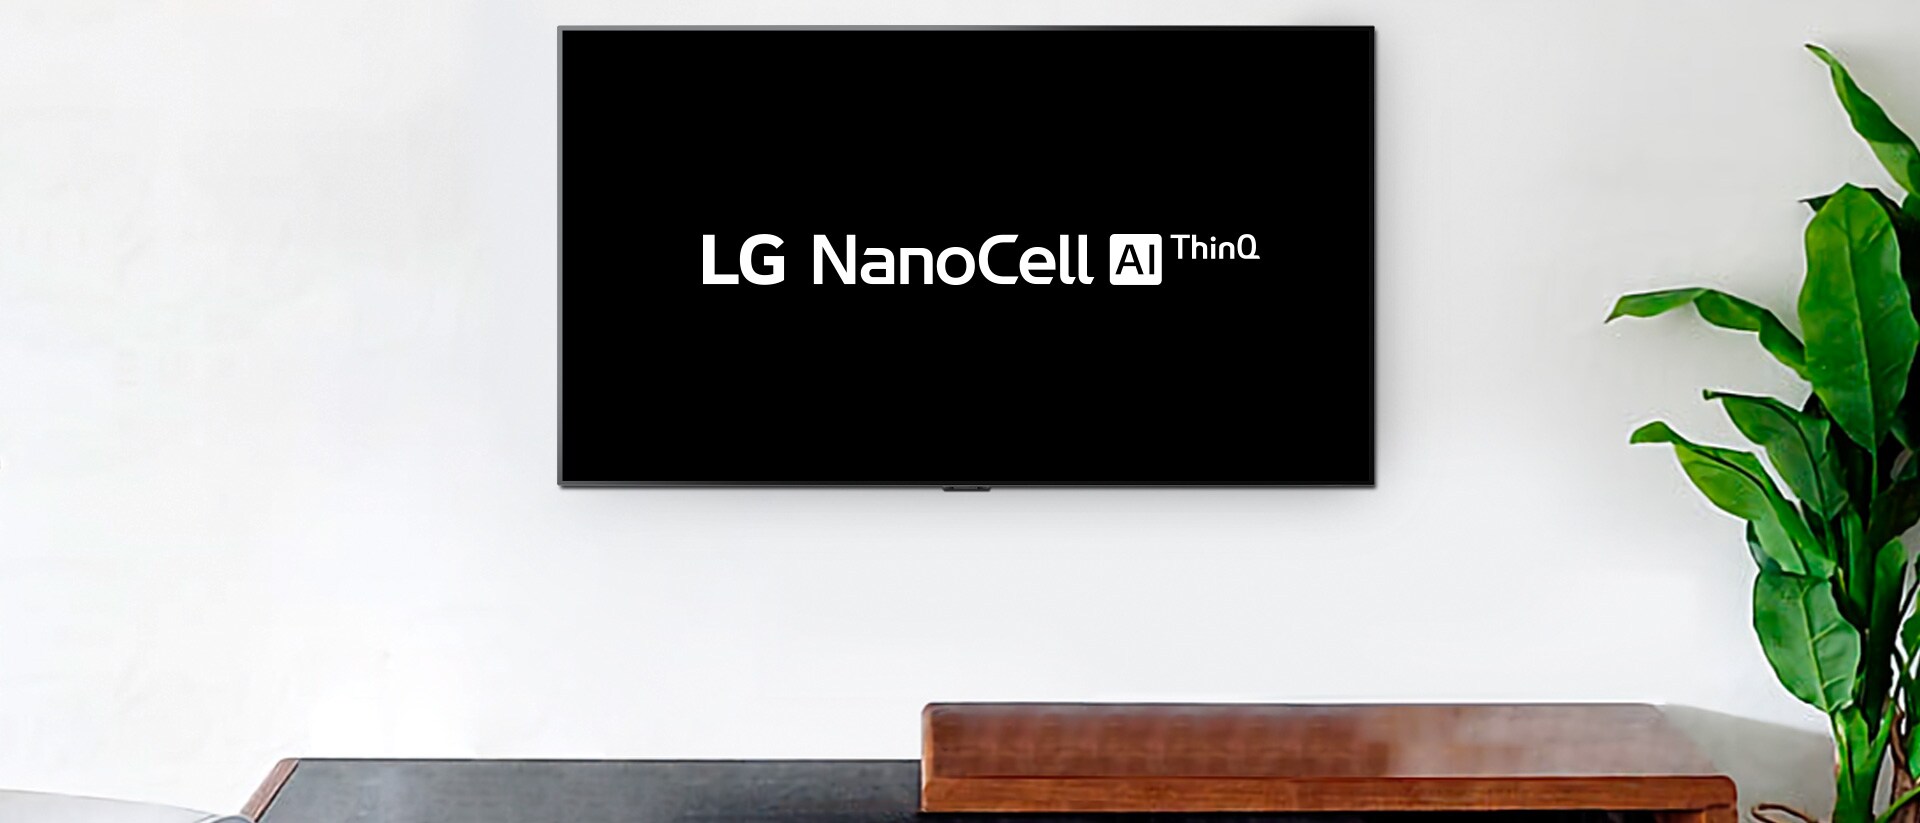 Монтиран на стената телевизор показва логото на LG OLED AI ThinQ на черен фон